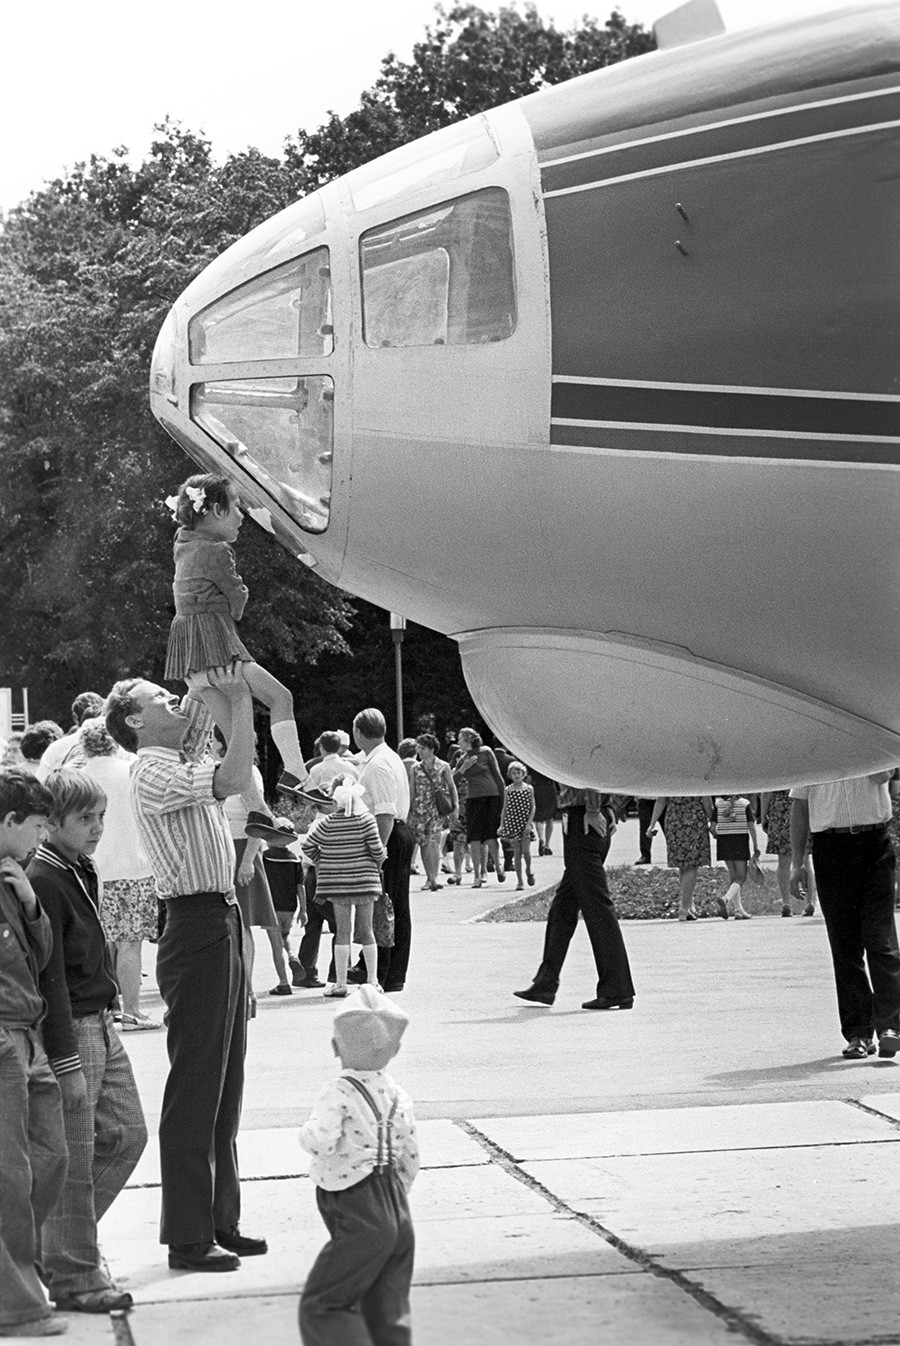 ユーリー・ガガーリン記念クイブィシェフ公園に設置されたAn-10を基に作られたアントーシカ映画航空機、1977年